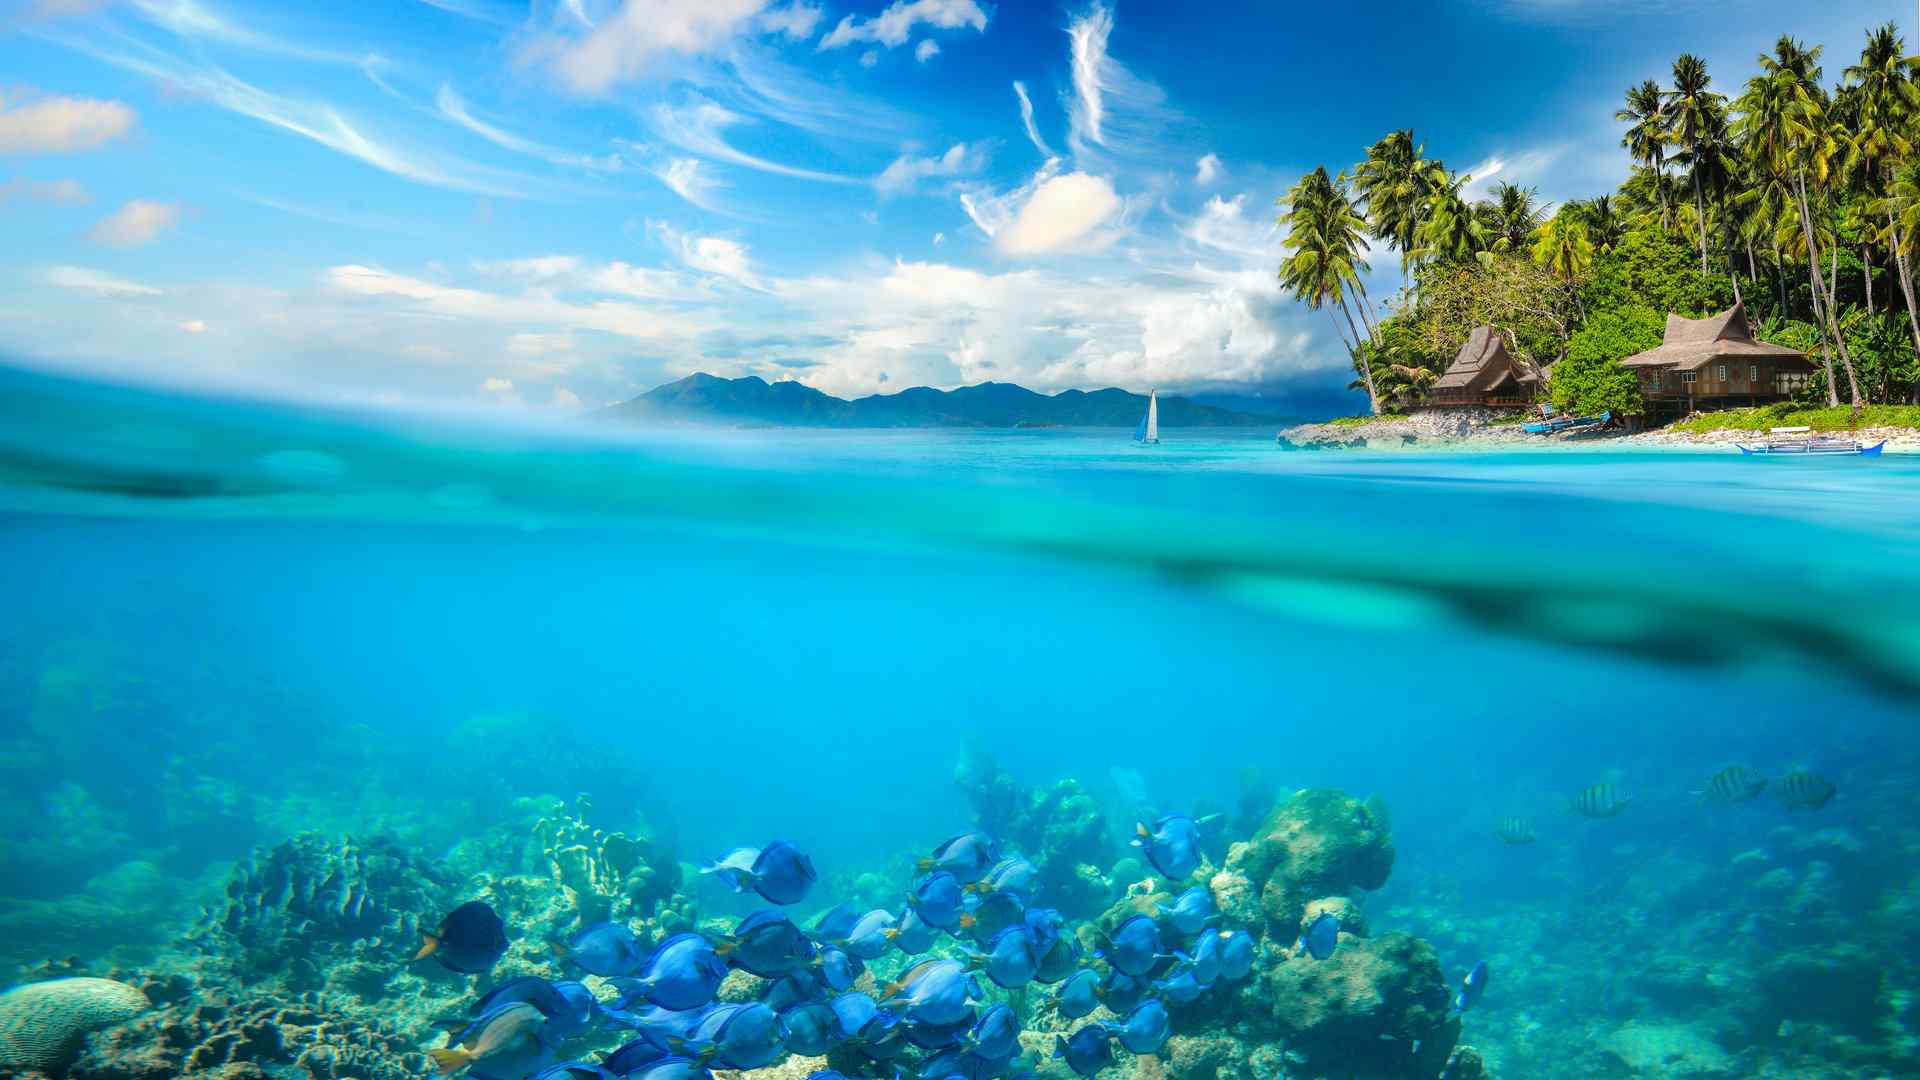 美丽的海底珊瑚礁高清风景图片桌面壁纸第二辑